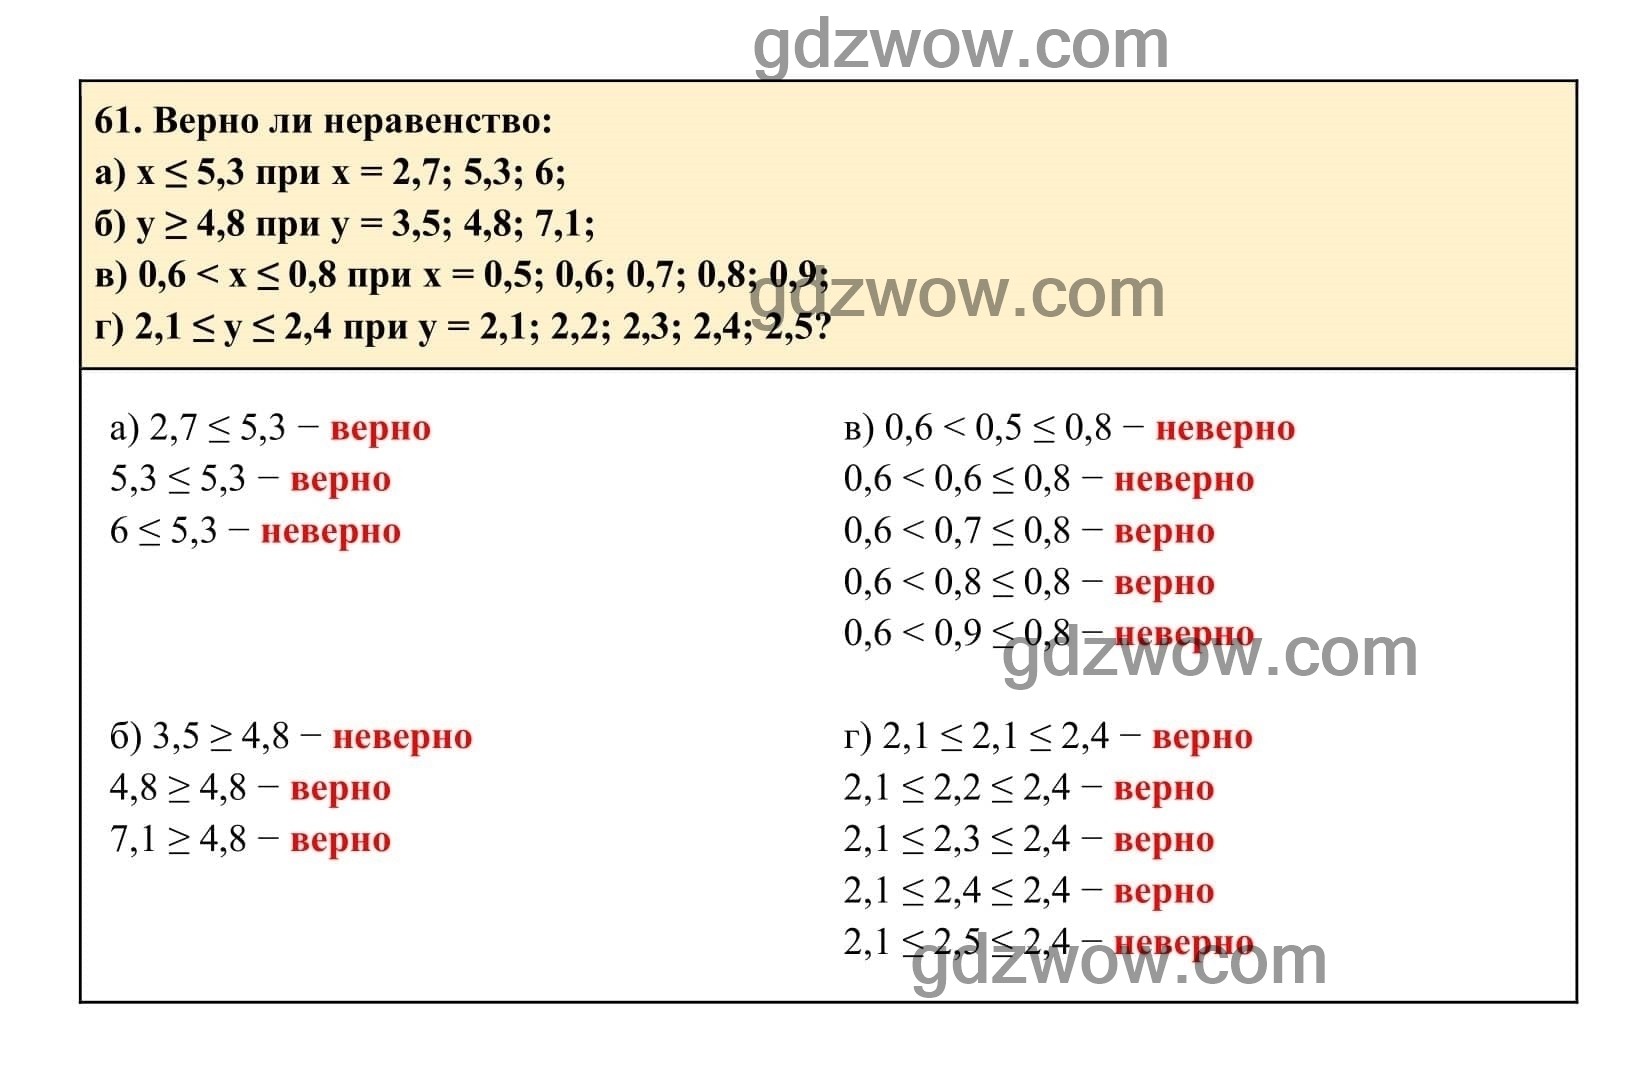 Упражнение 61 - ГДЗ по Алгебре 7 класс Учебник Макарычев (решебник) - GDZwow